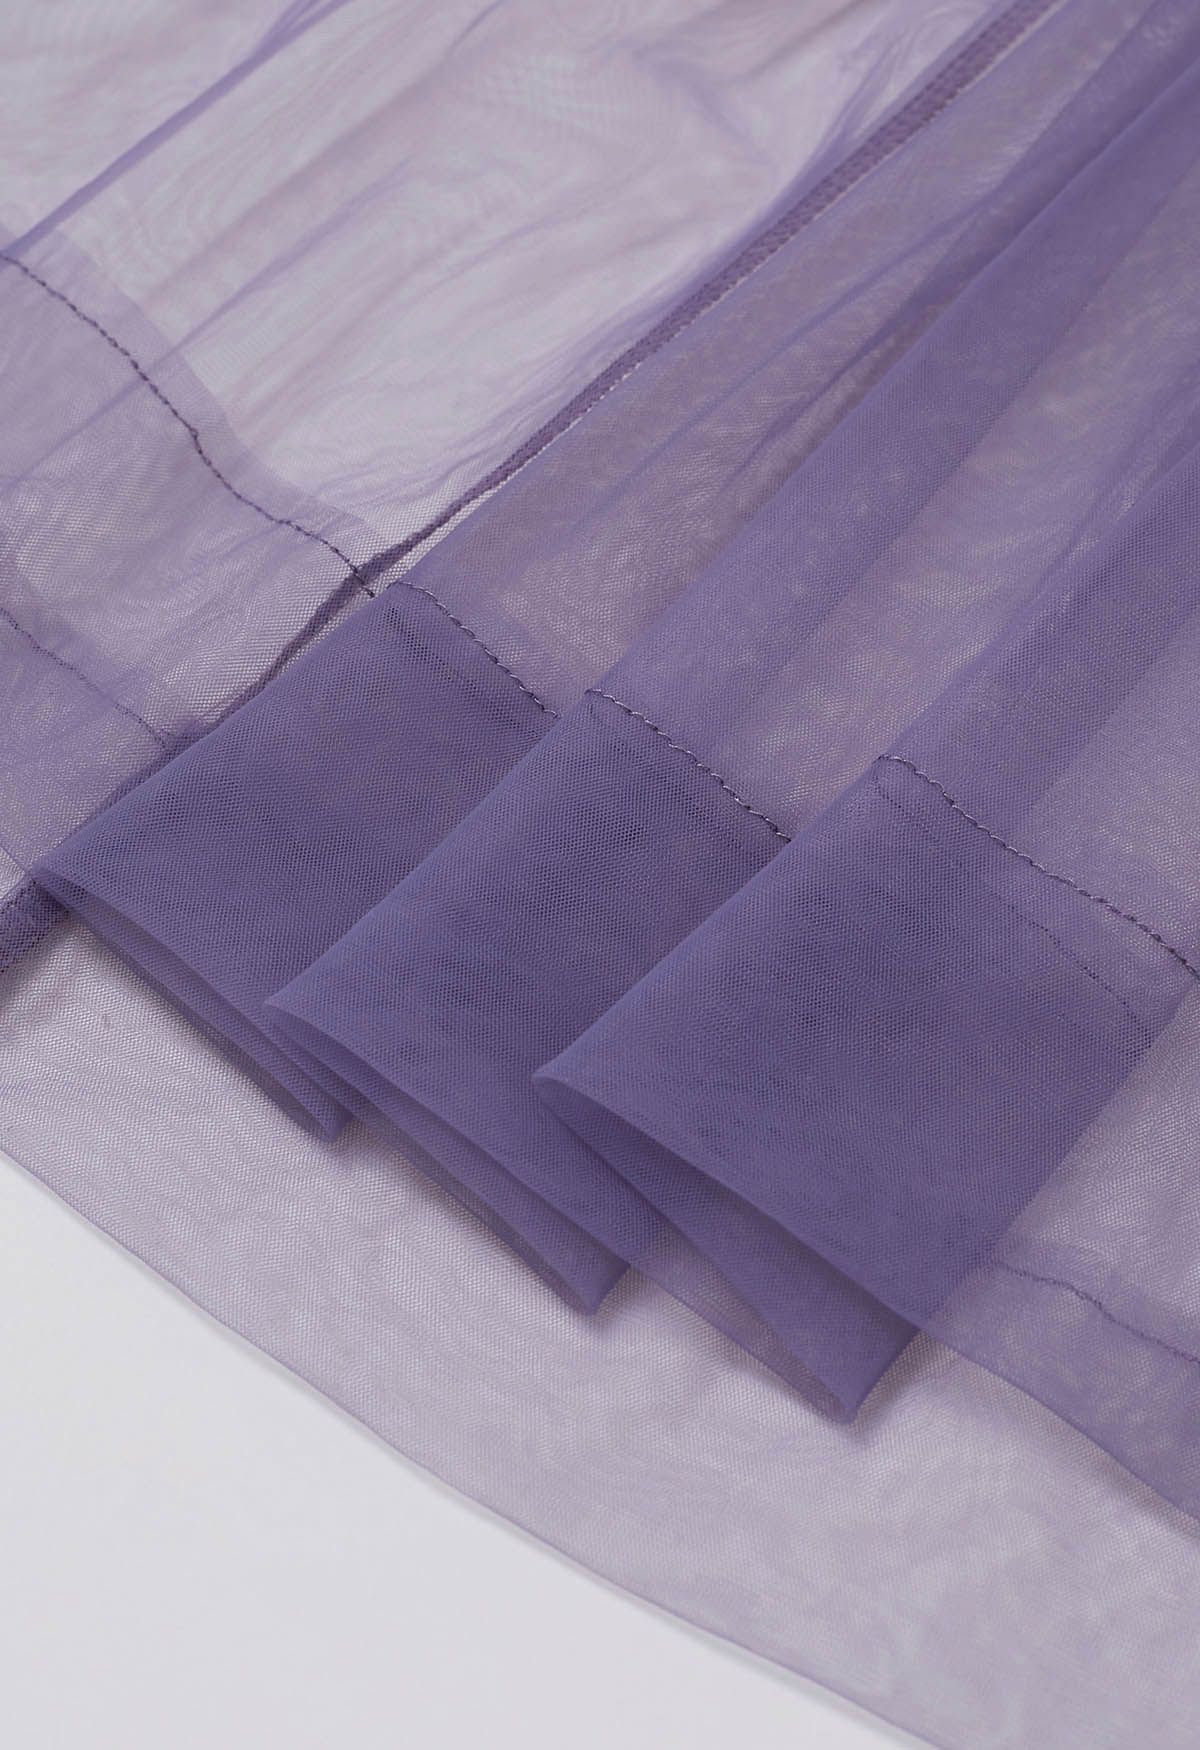 Ruffles Adorned Mesh Tulle Midi Skirt in Purple